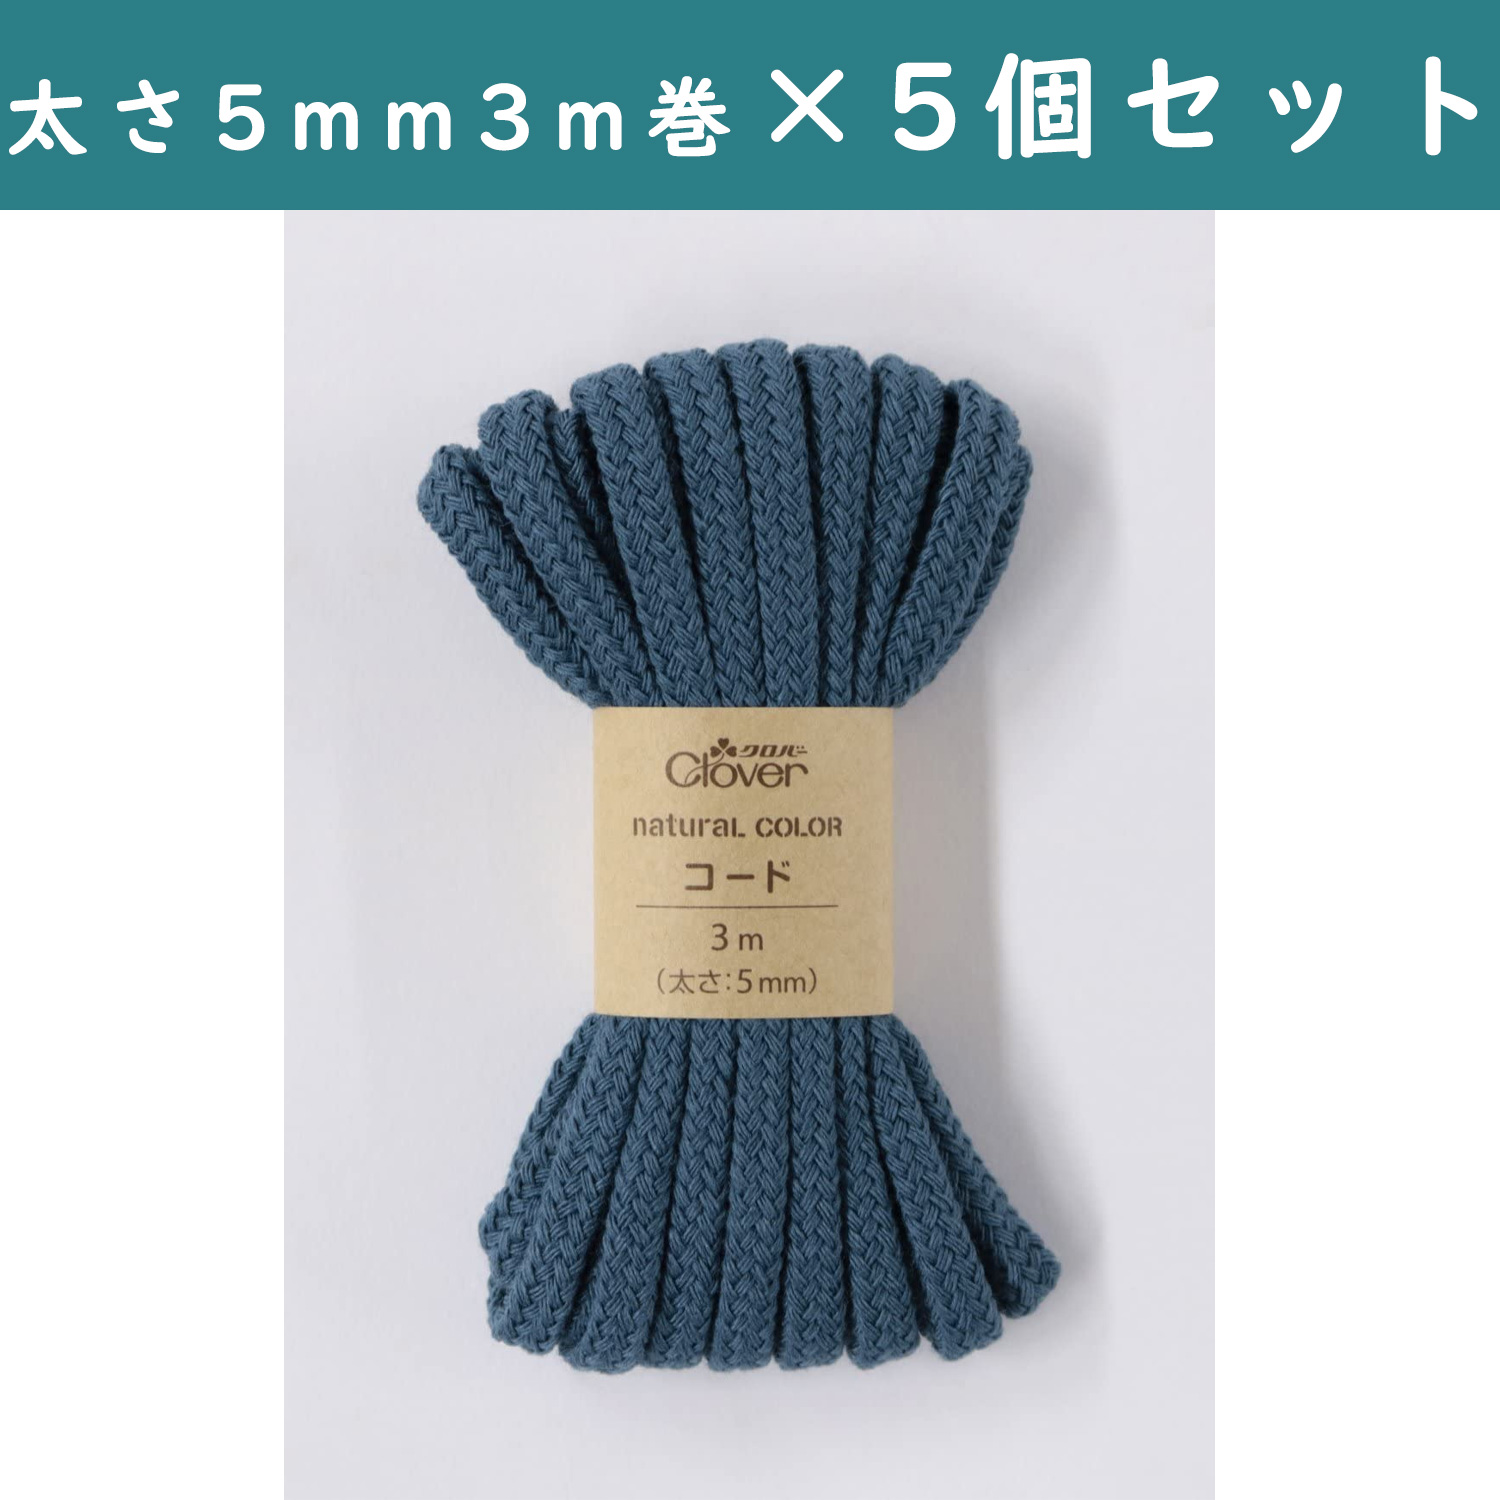 ■【5個】CL26-194-5set ナチュラルカラー コード 3m巻 ナイトブルー 5個セット (セット)